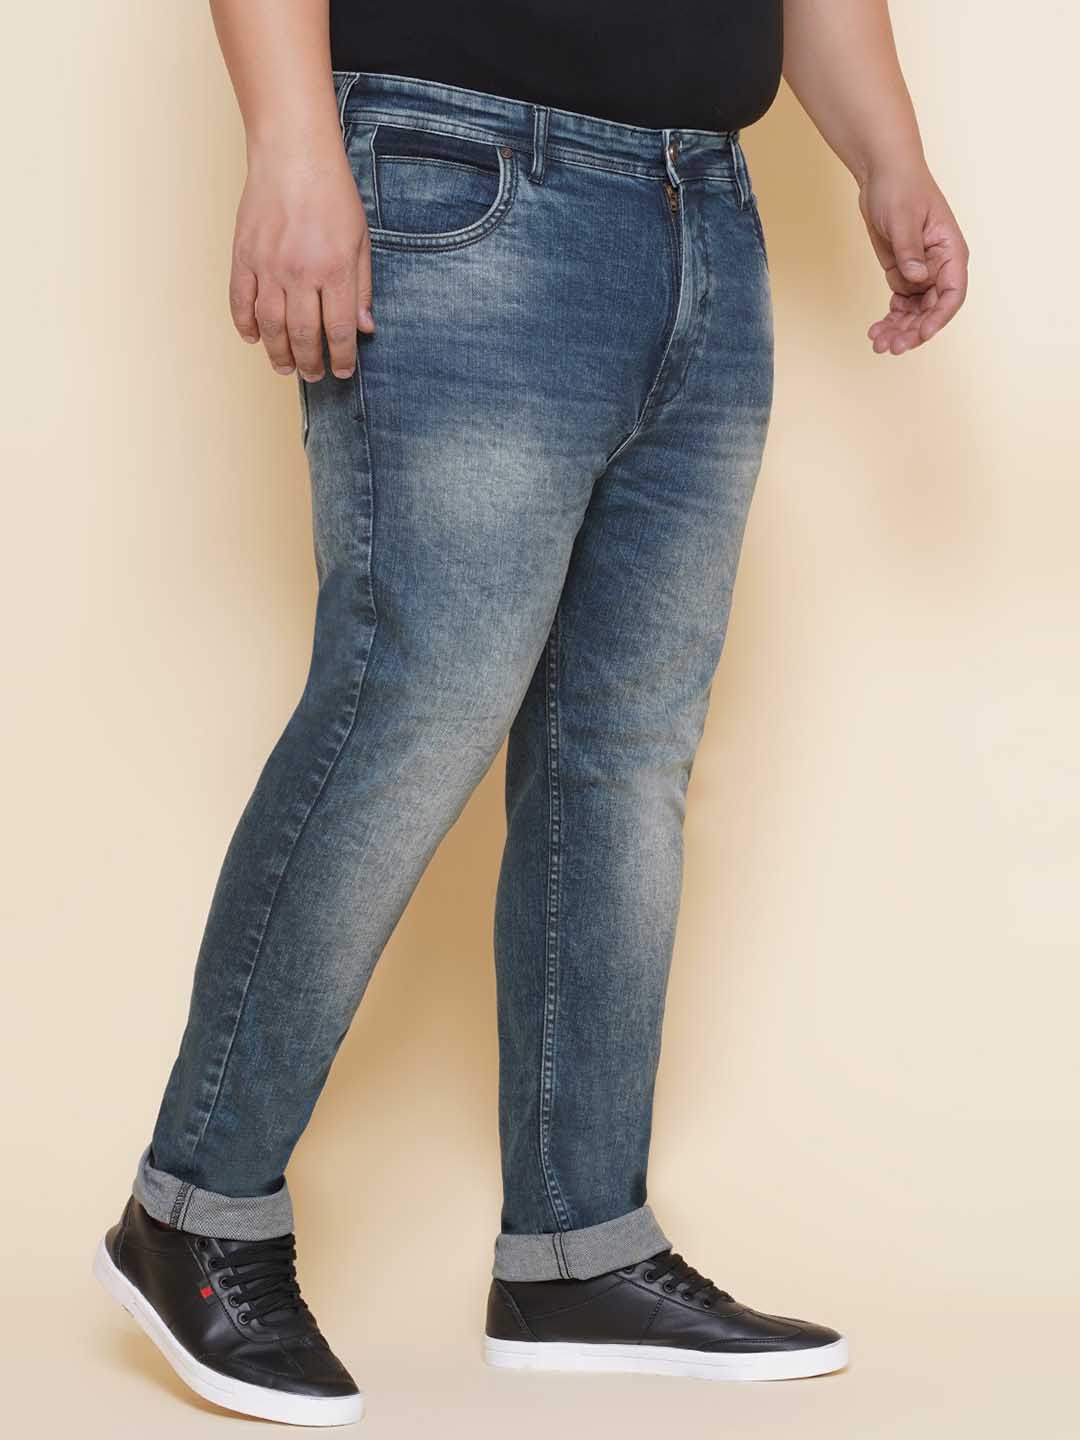 bottomwear/jeans/EJPJ25139/ejpj25139-3.jpg